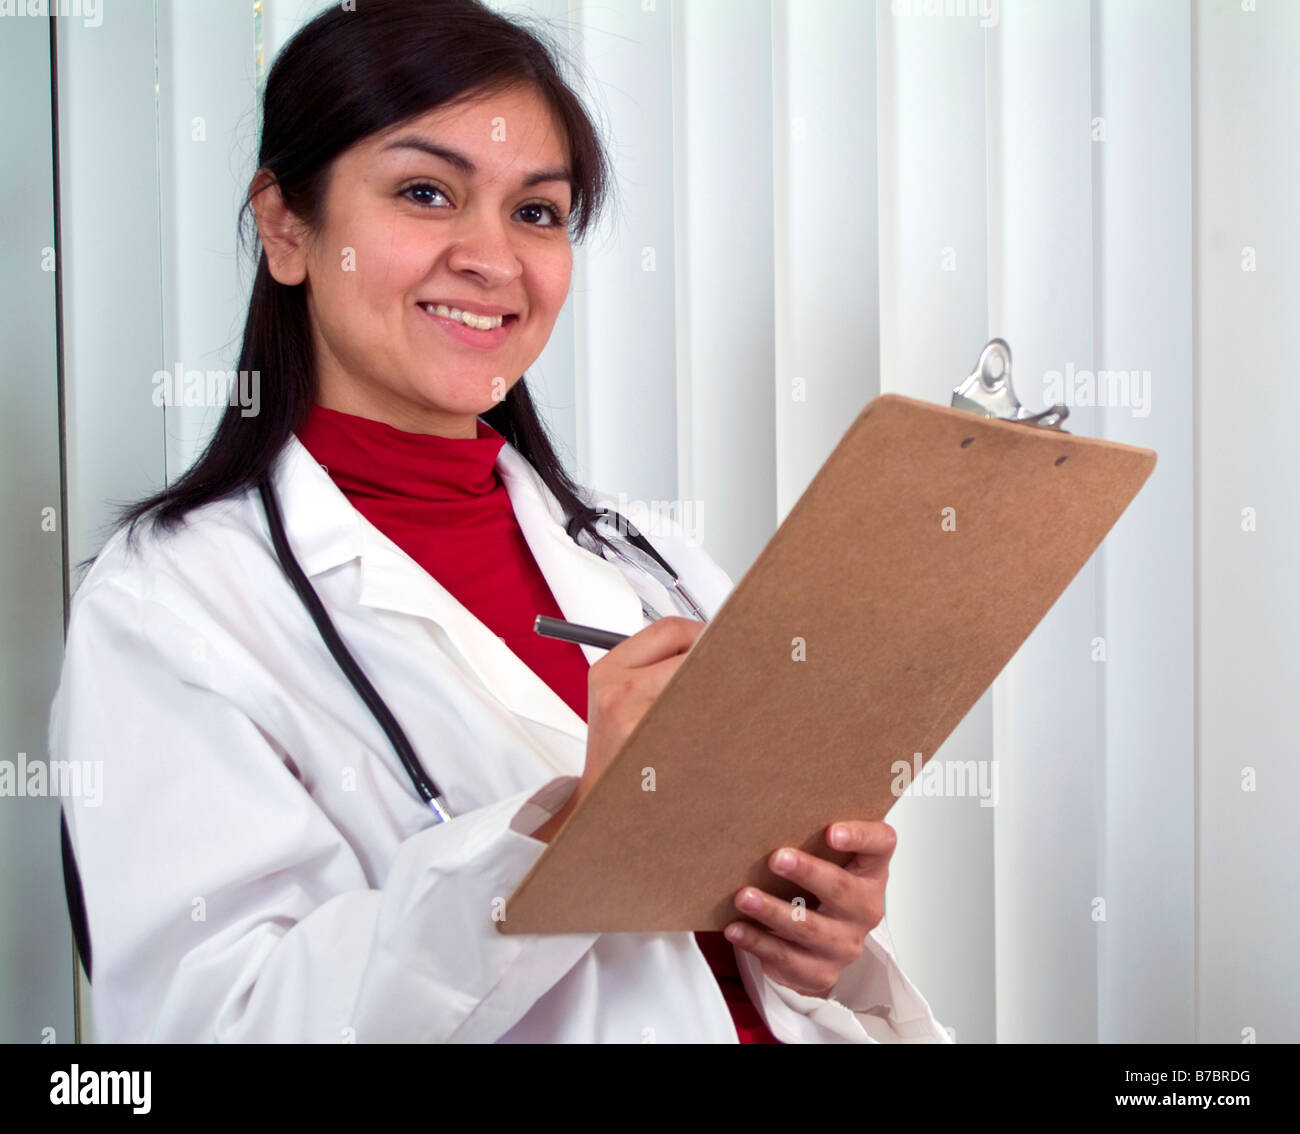 Ein junger Arzt mit einem Diagramm in der Hand mit großen Lächeln auf ihrem Gesicht Stockfoto